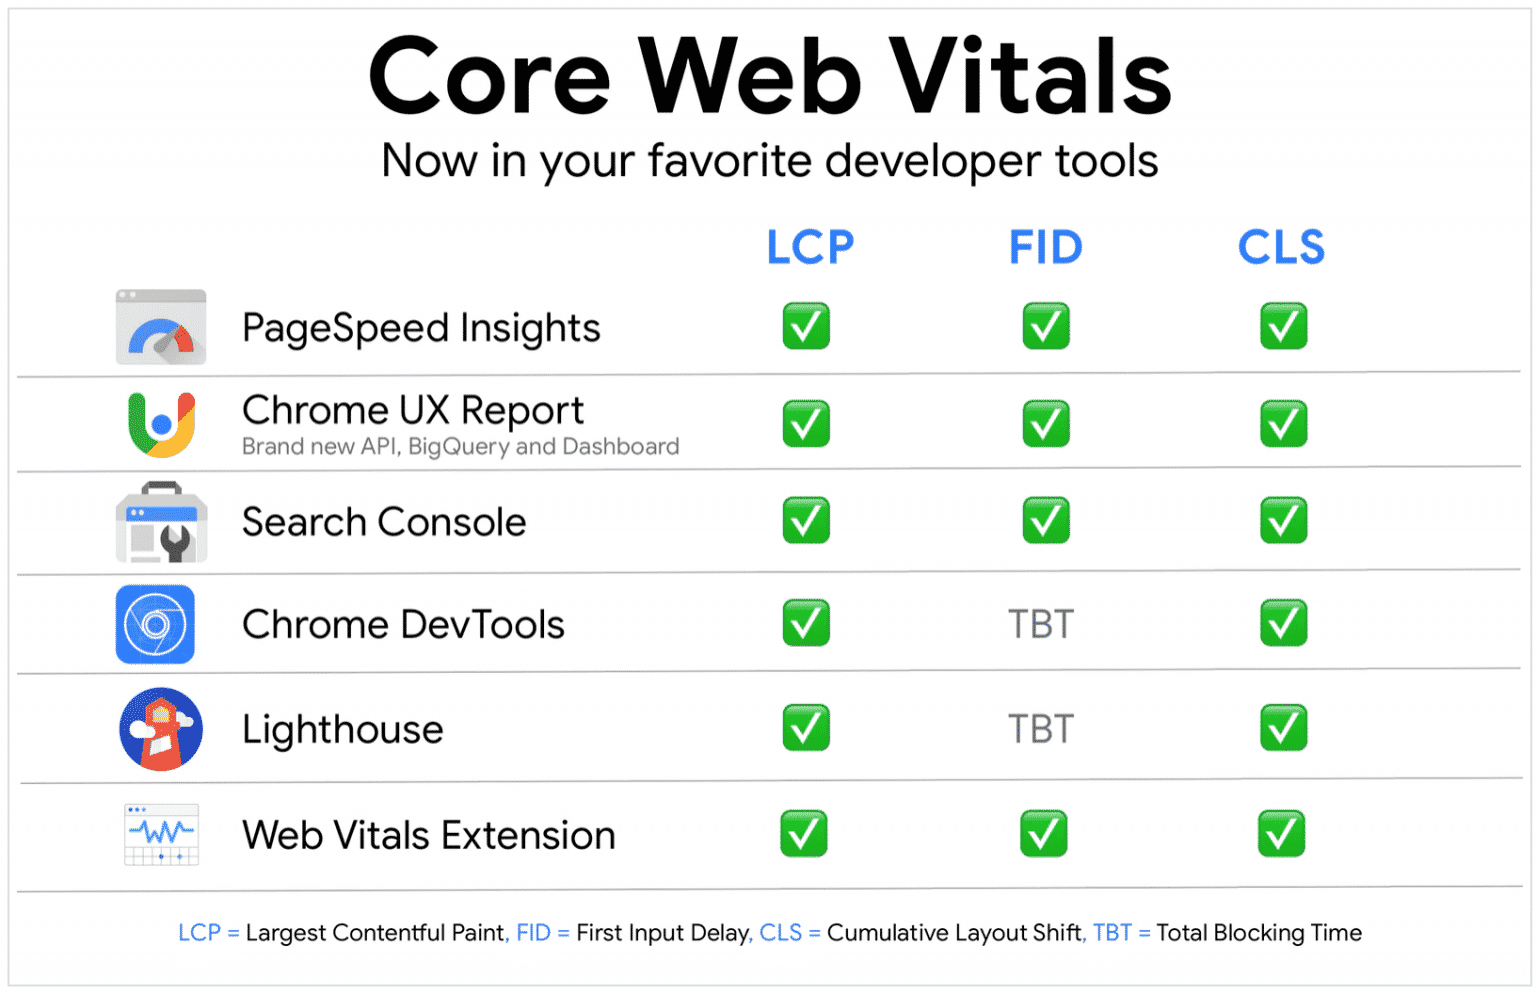 core-web-vitals-tools-to-measure-1536x994